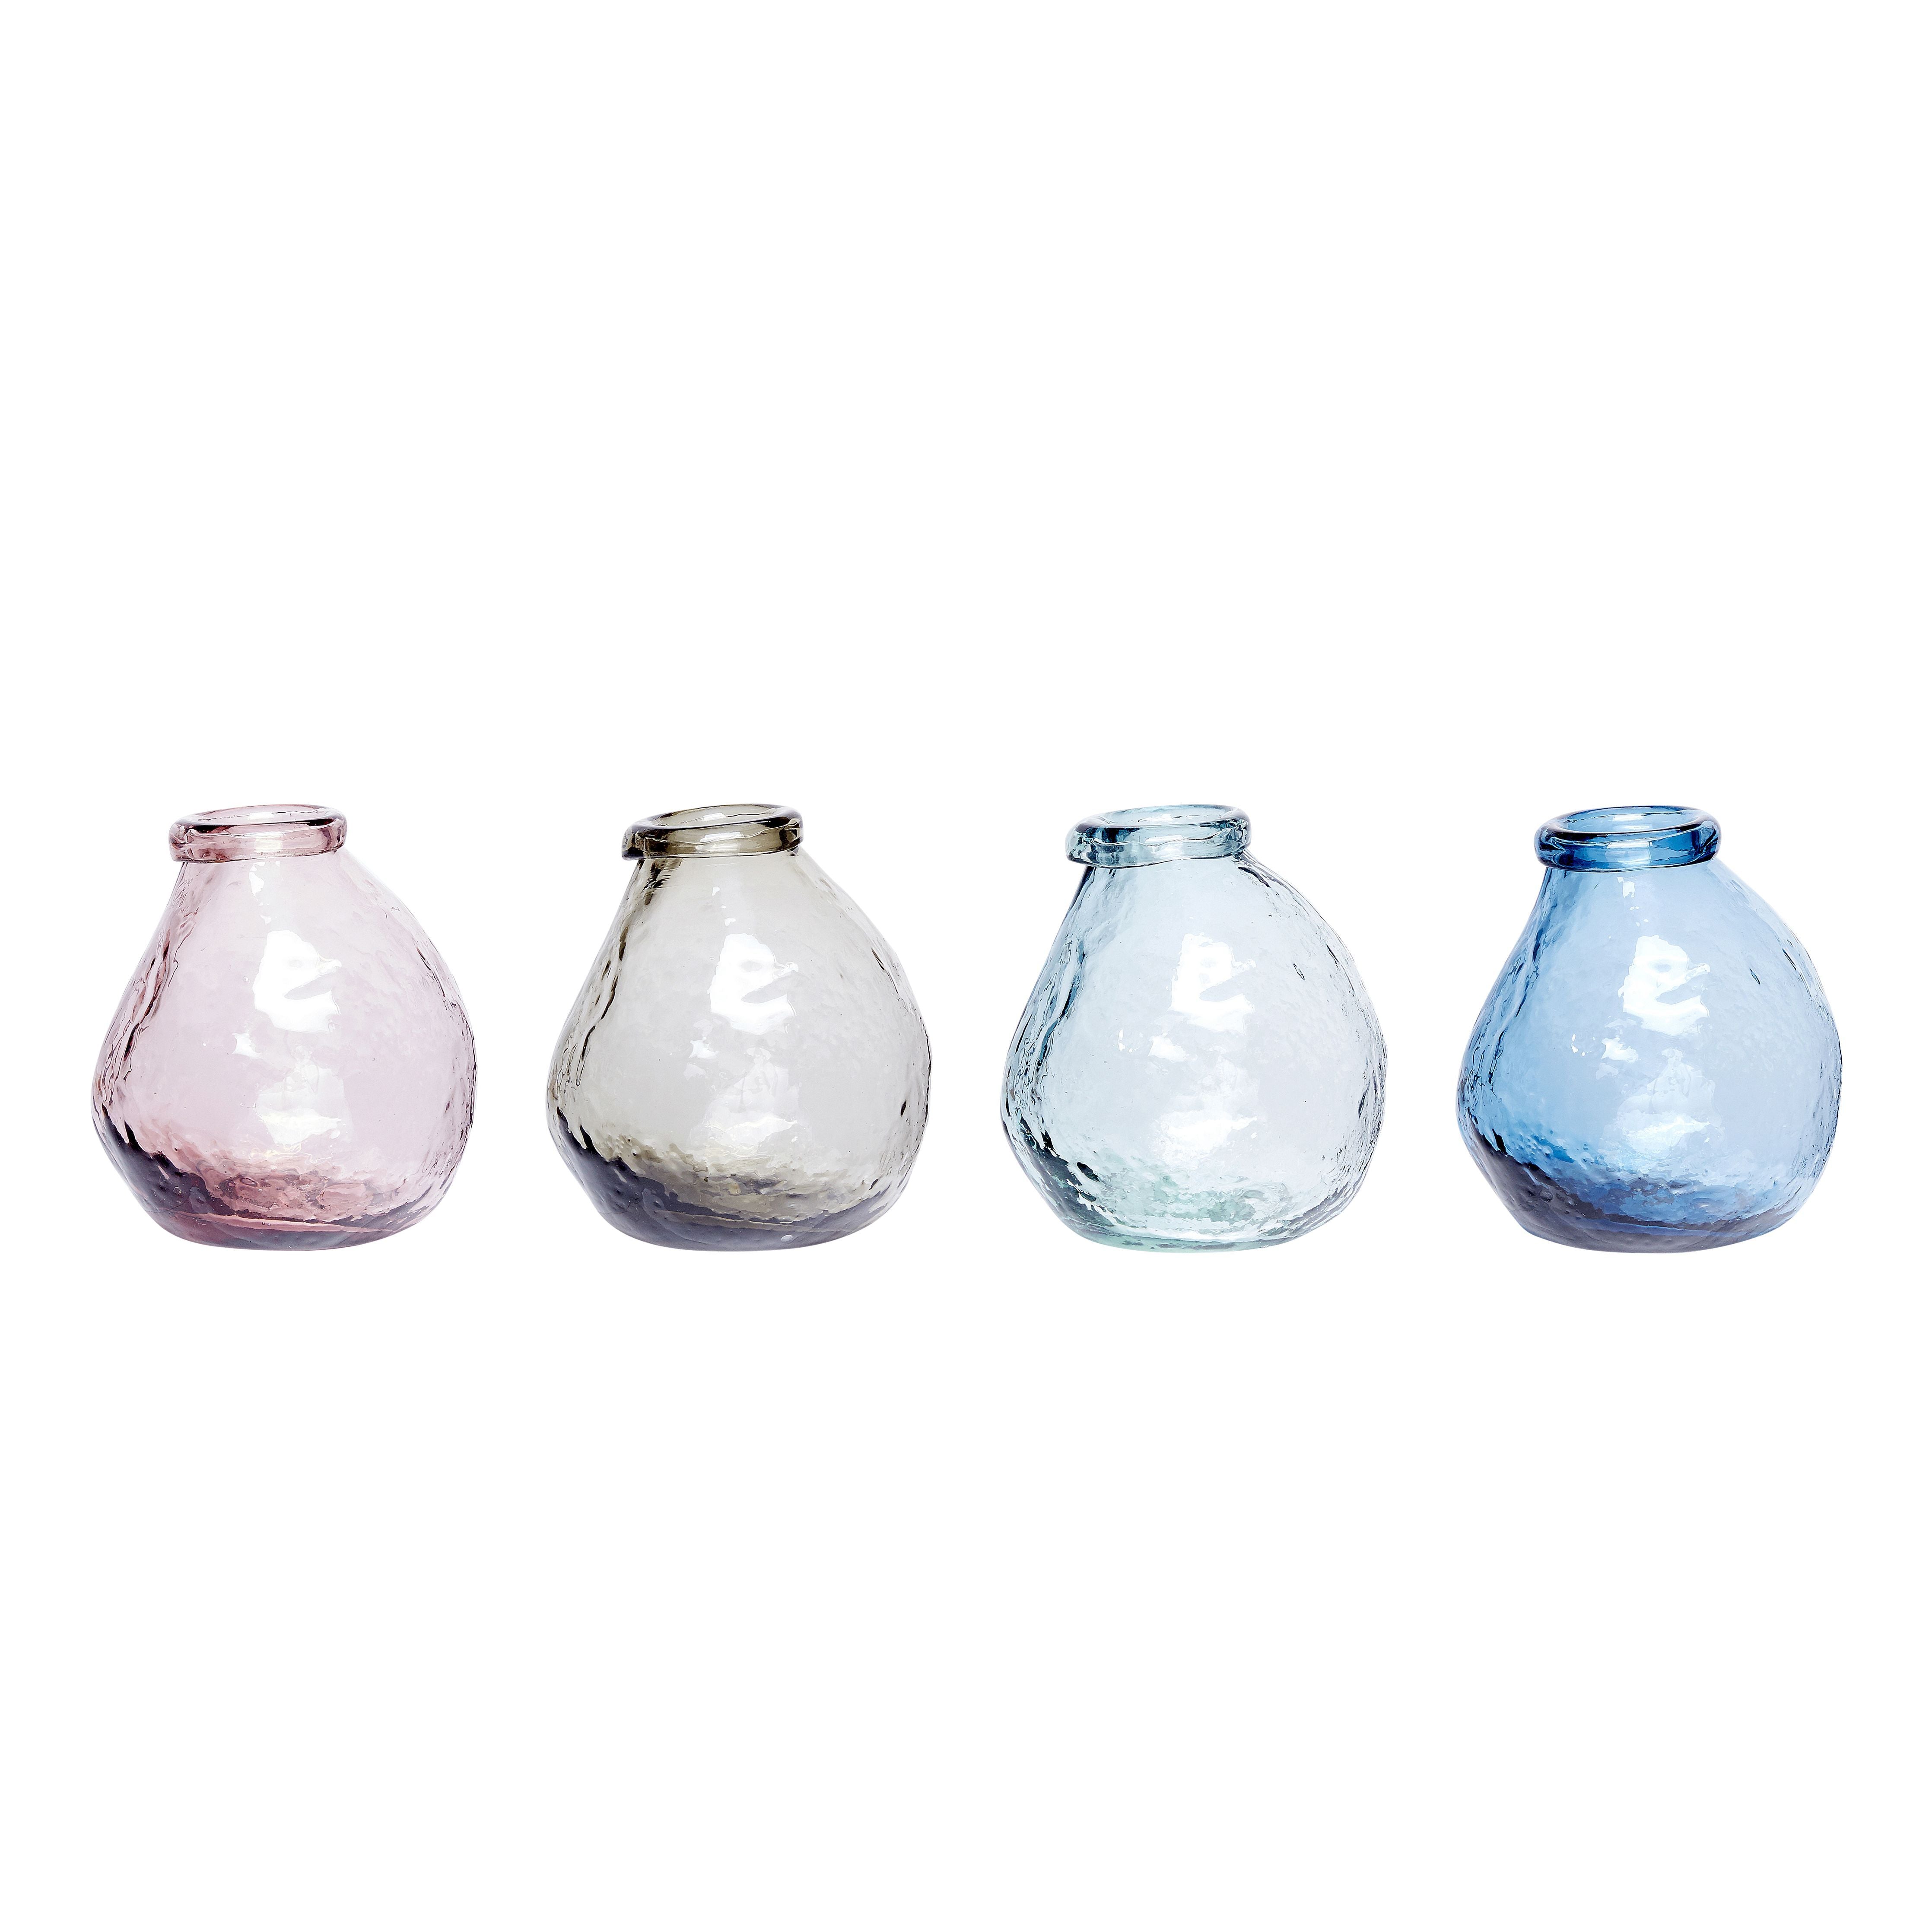 Hübsch Vase Glass Pink/Clear/Blue/Gray Set på 4, Øx H 10x12 cm